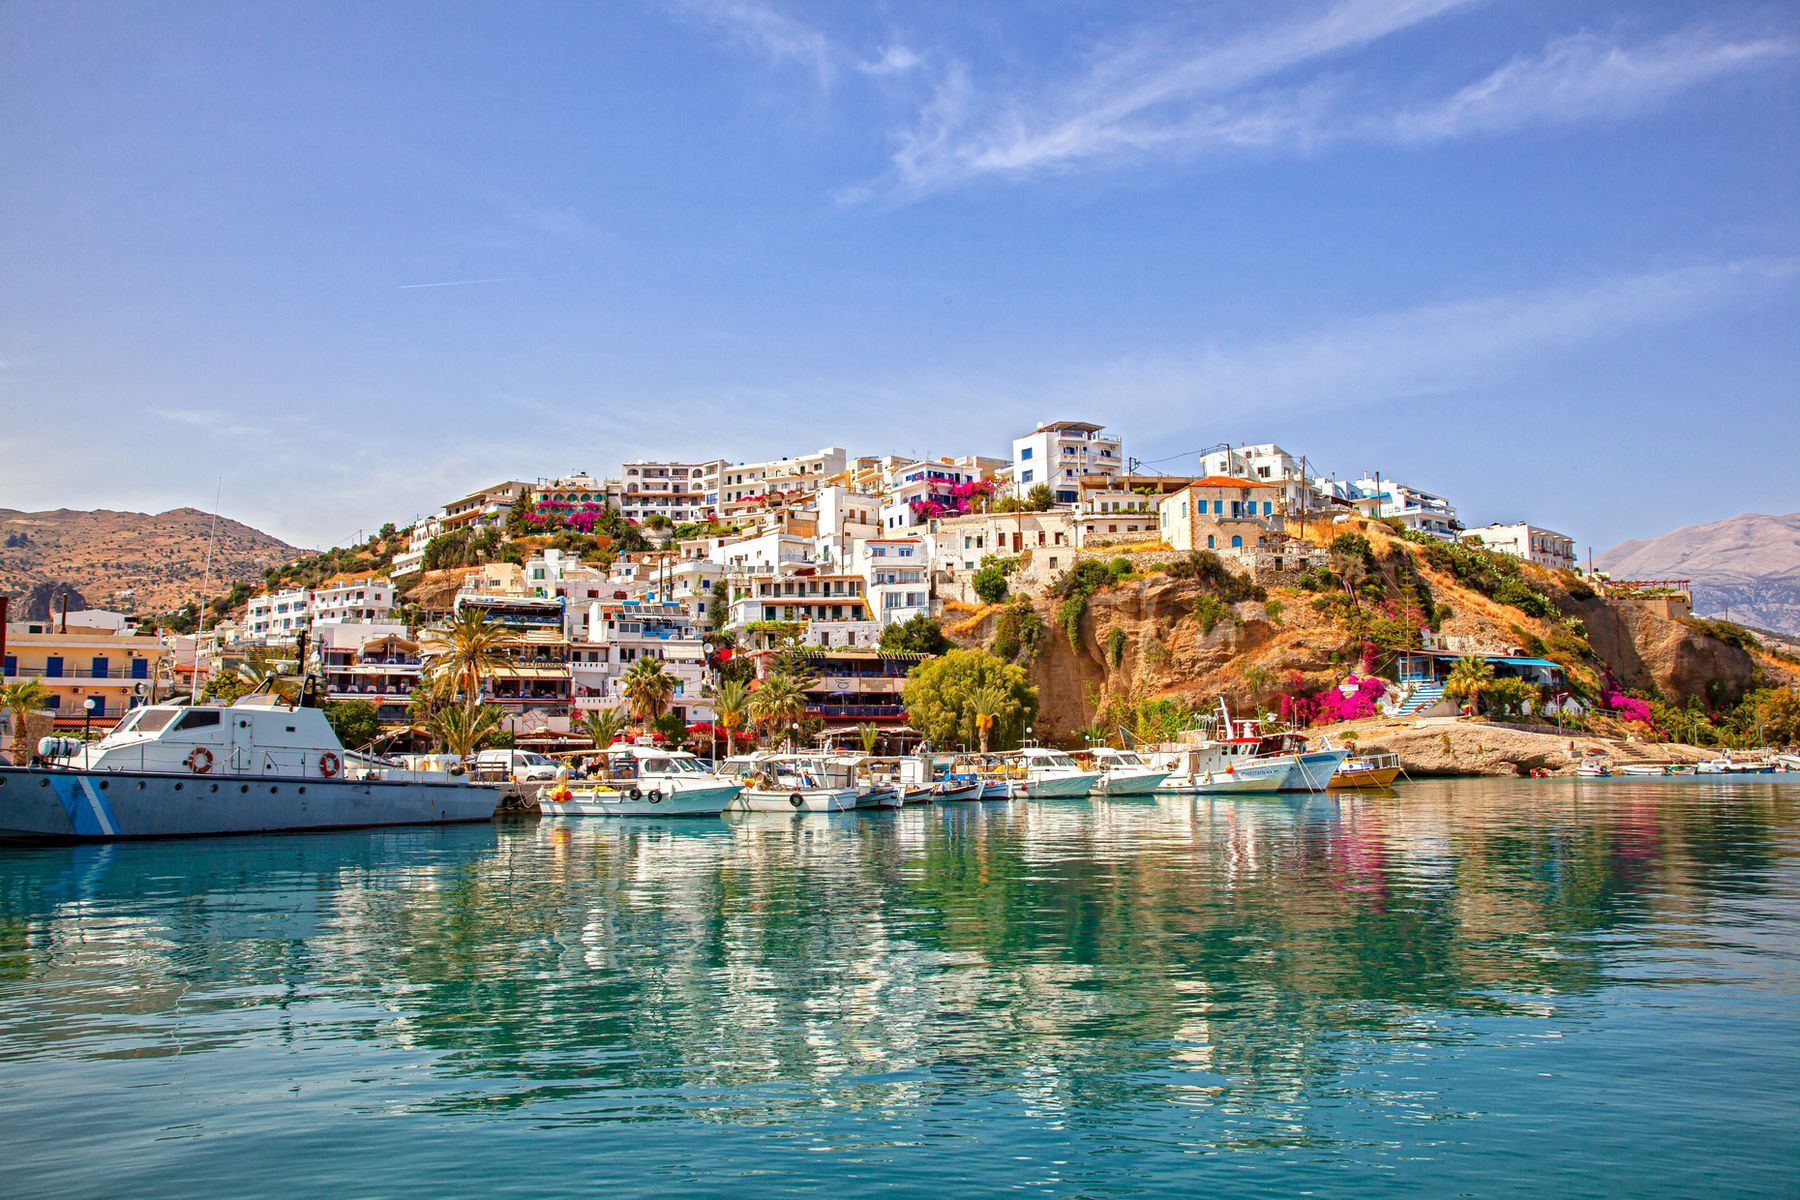 <p>Plus grande île grecque, la <a href="https://www.visitgreece.gr/islands/crete/">Crète</a> est connue pour ses plages emblématiques comme celle d’Elafonissi et le lagon de Balos, mais elle vous réserve aussi une panoplie d’autres trésors captivants. Vous pourrez vous balader à travers les vestiges du palais de Knossos, berceau de la civilisation minoenne, ou dans les rues charmantes de La Canée, en passant par son sublime port vénitien. Pour les amoureux de plein air, une randonnée au cœur des gorges de Samaria est une activité incontournable à ajouter à votre itinéraire.</p>